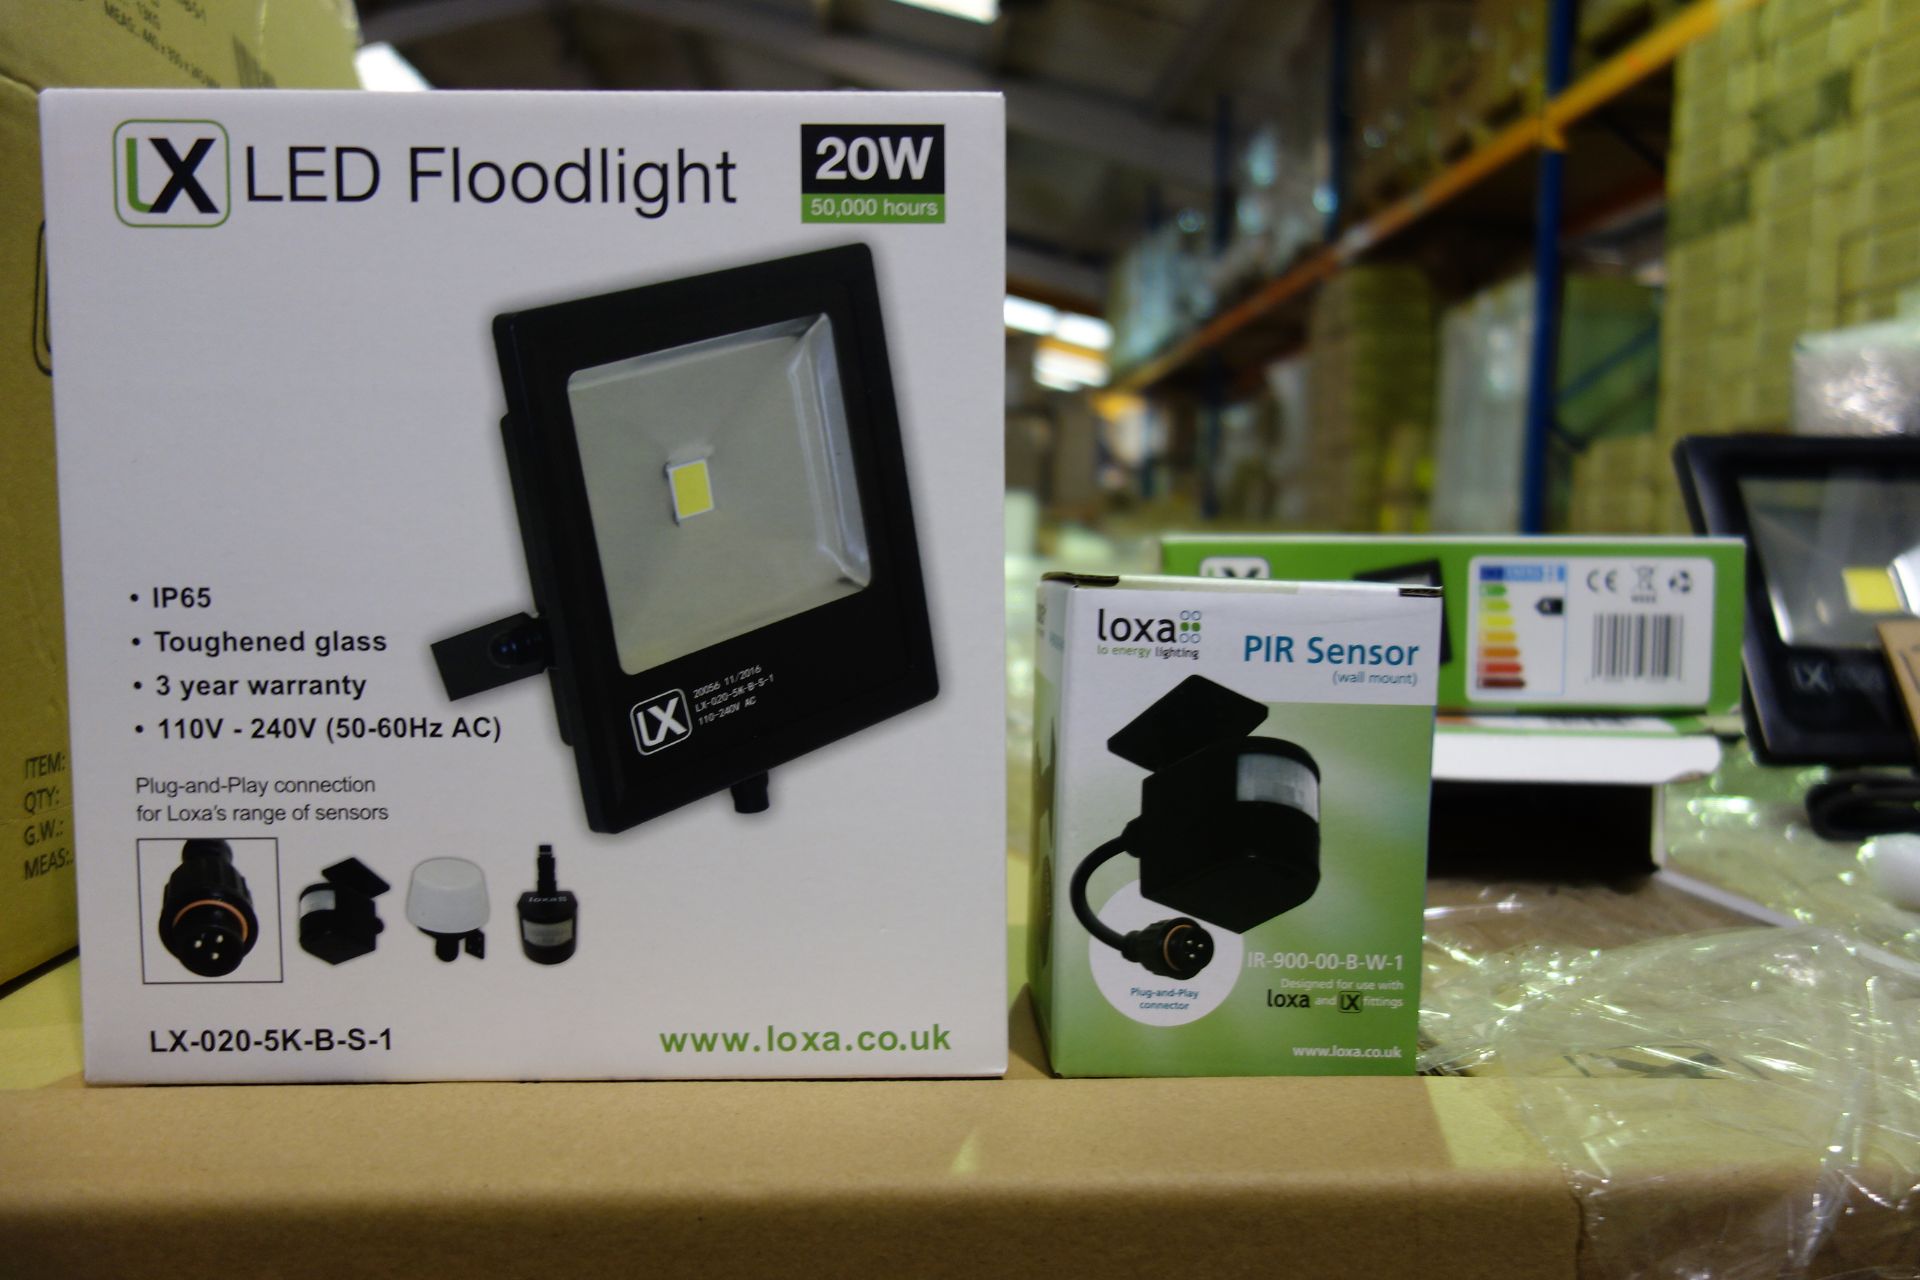 6 X Loxa LX-020-5K-B-5-1 LED Floodlight 20W C/W Loxa 1R-900-00-B-W-1 PIR